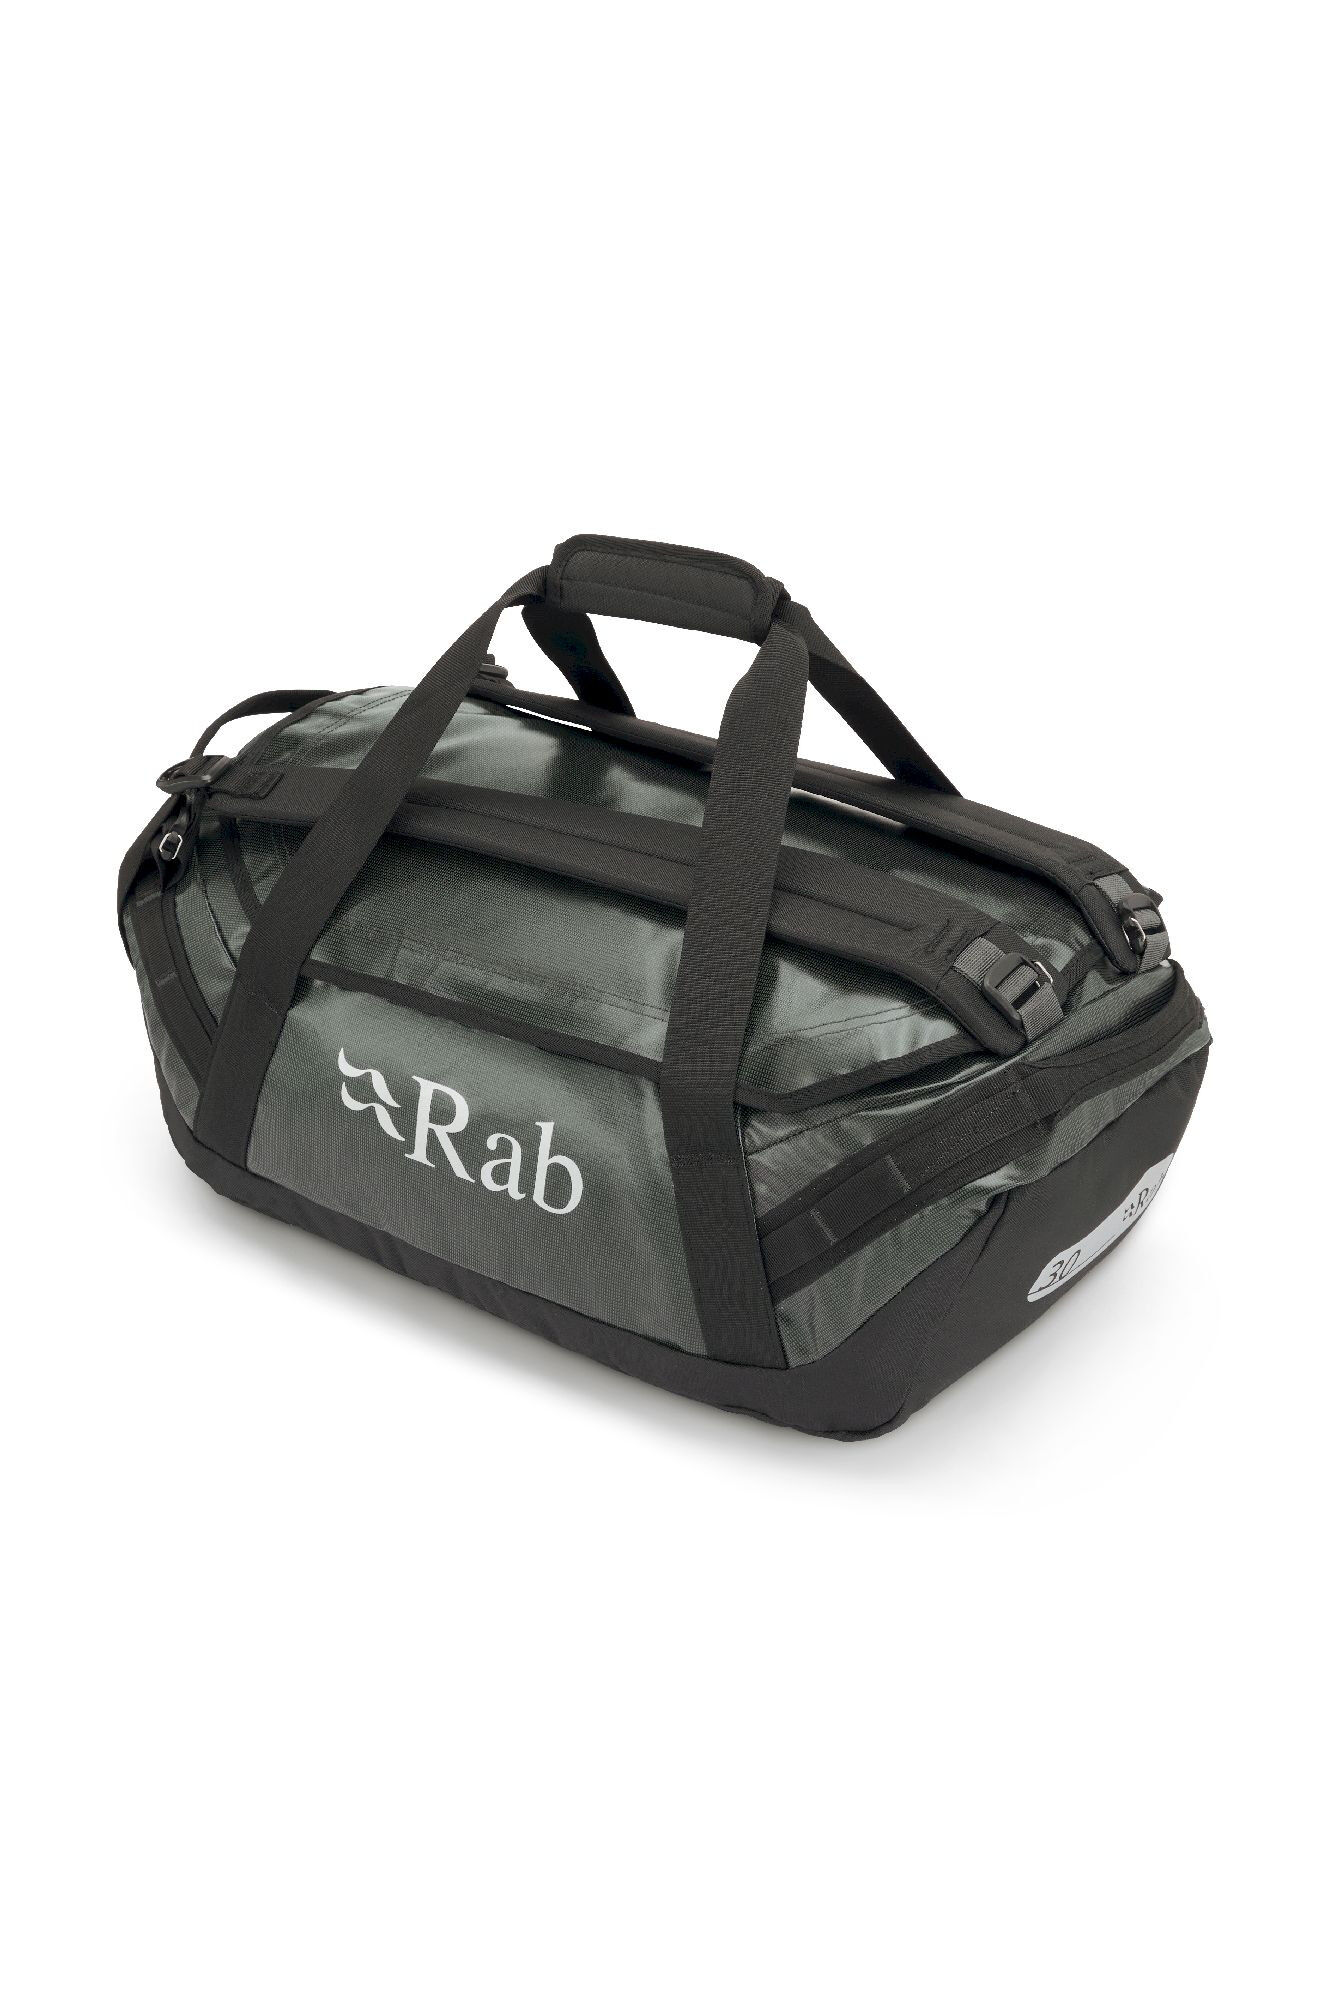 Rab Expedition Kitbag II 30 - Duffel laukku | Hardloop